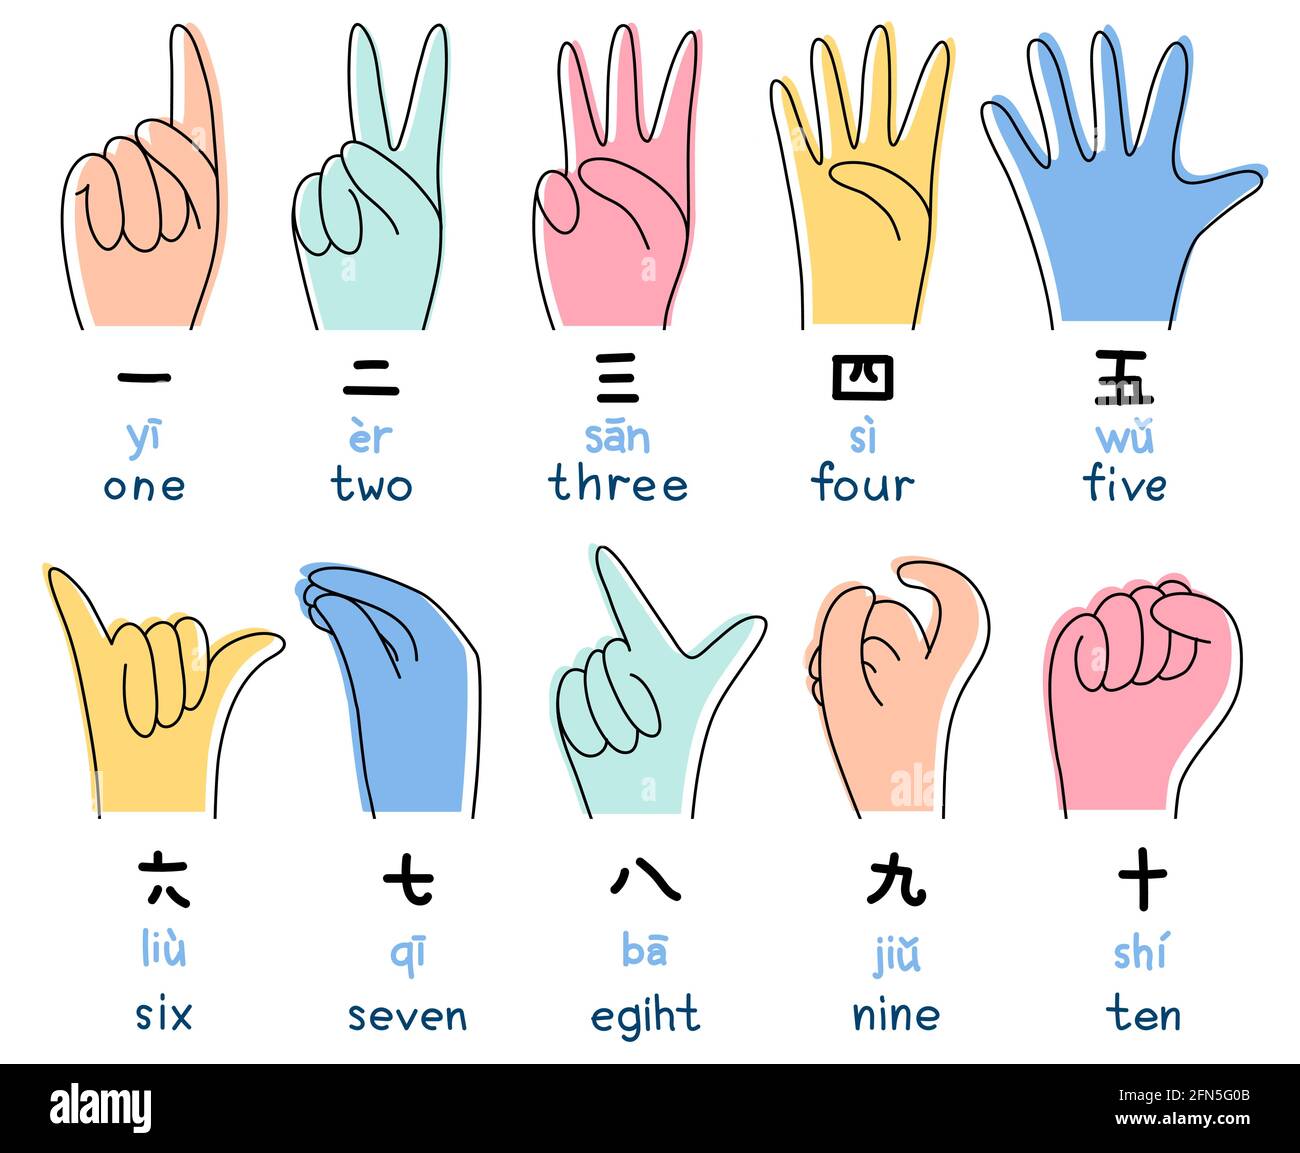 Chinesische, japanische Zahlen mit Händen Vektor-Illustration in  Doodle-Stil. Benennung von Zahlen mit Händen, Gesten. Zählen bis zu zehn -  Hände, Hieroglyphen Stock-Vektorgrafik - Alamy